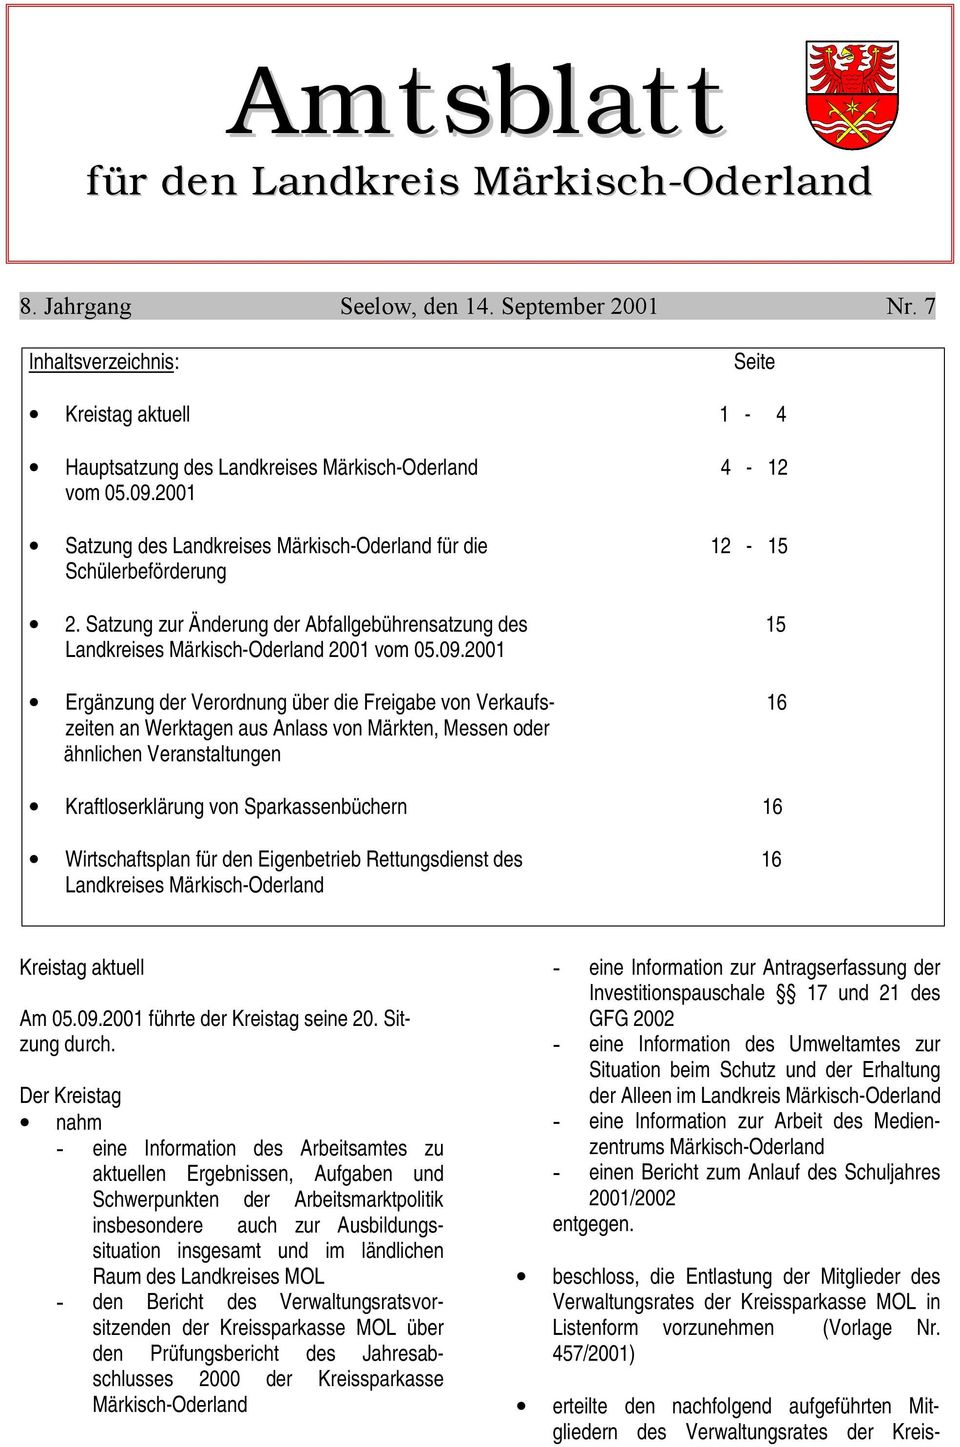 Satzung zur Änderung der Abfallgebührensatzung des 15 Landkreises Märkisch-Oderland 2001 vom 05.09.